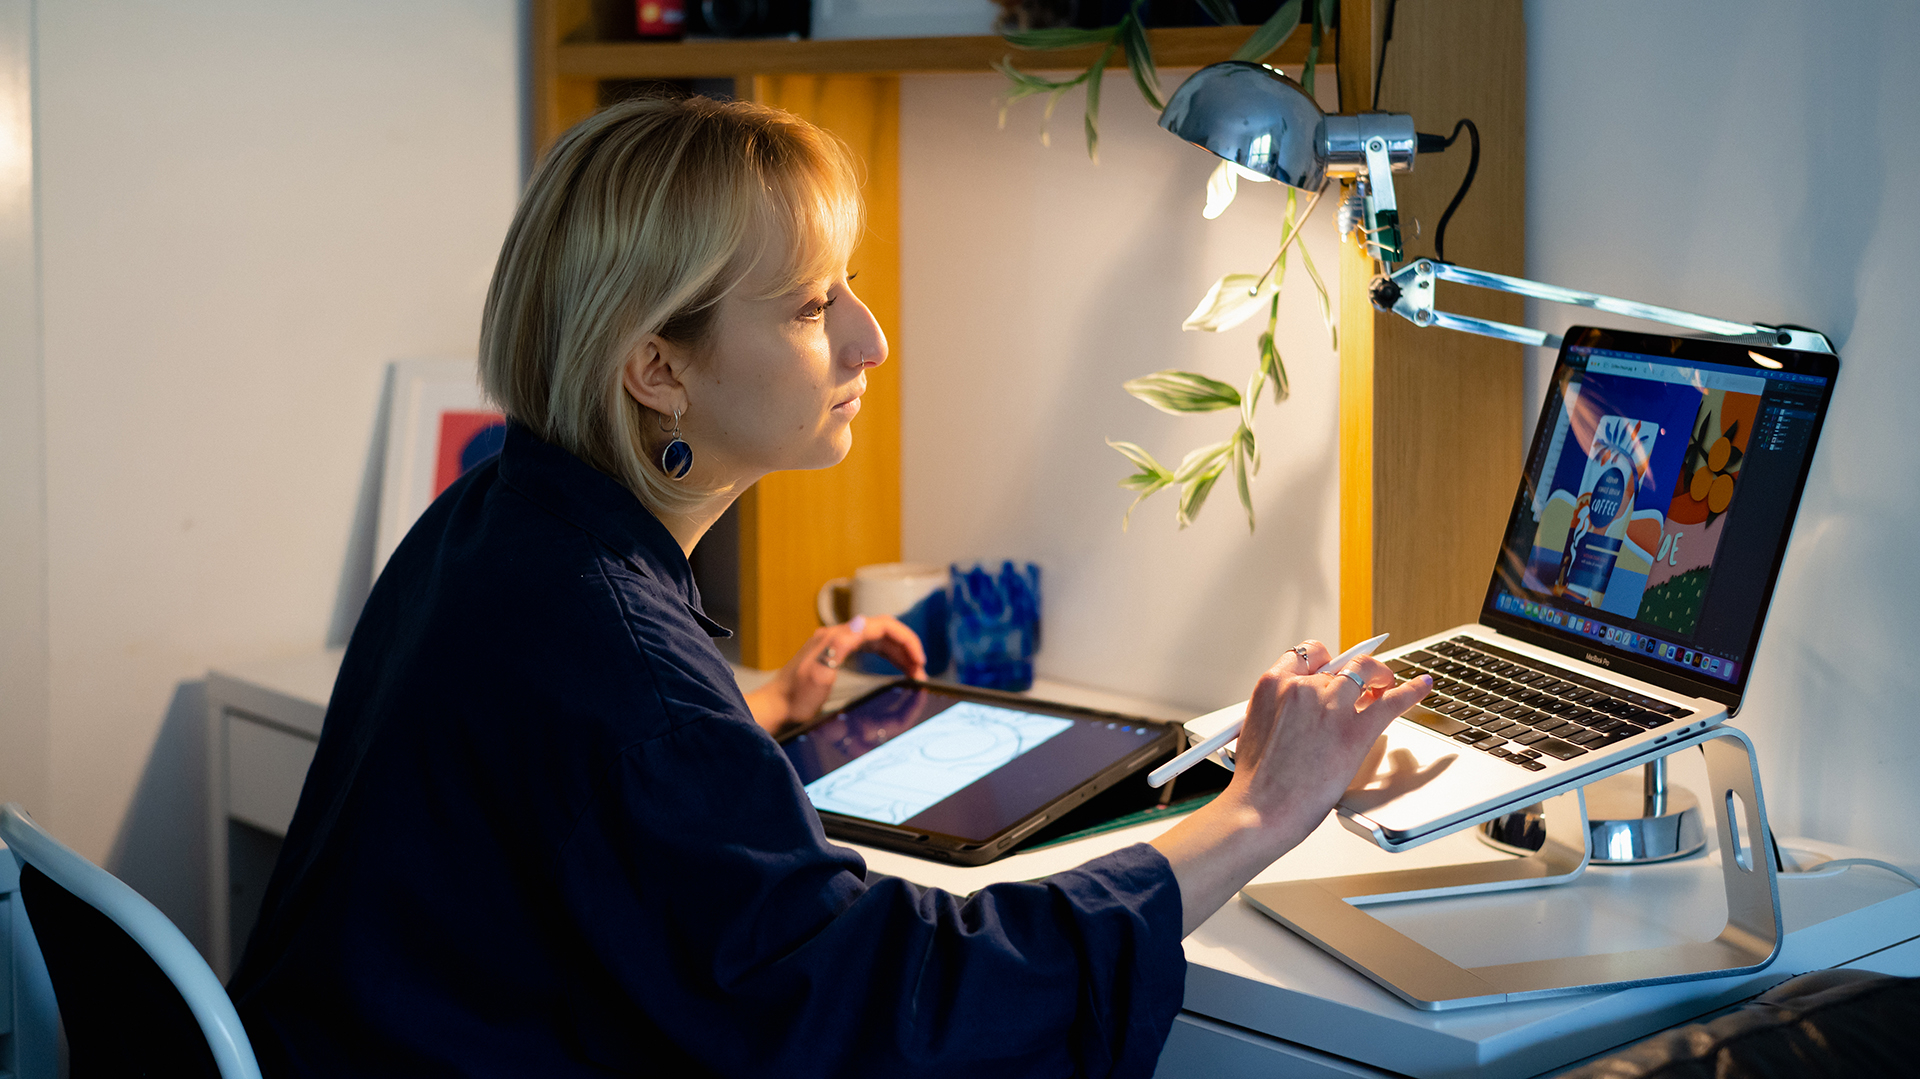 Жінка сидить за столом і друкує на комп'ютері зі стилусом у руці, на задньому плані — планшет